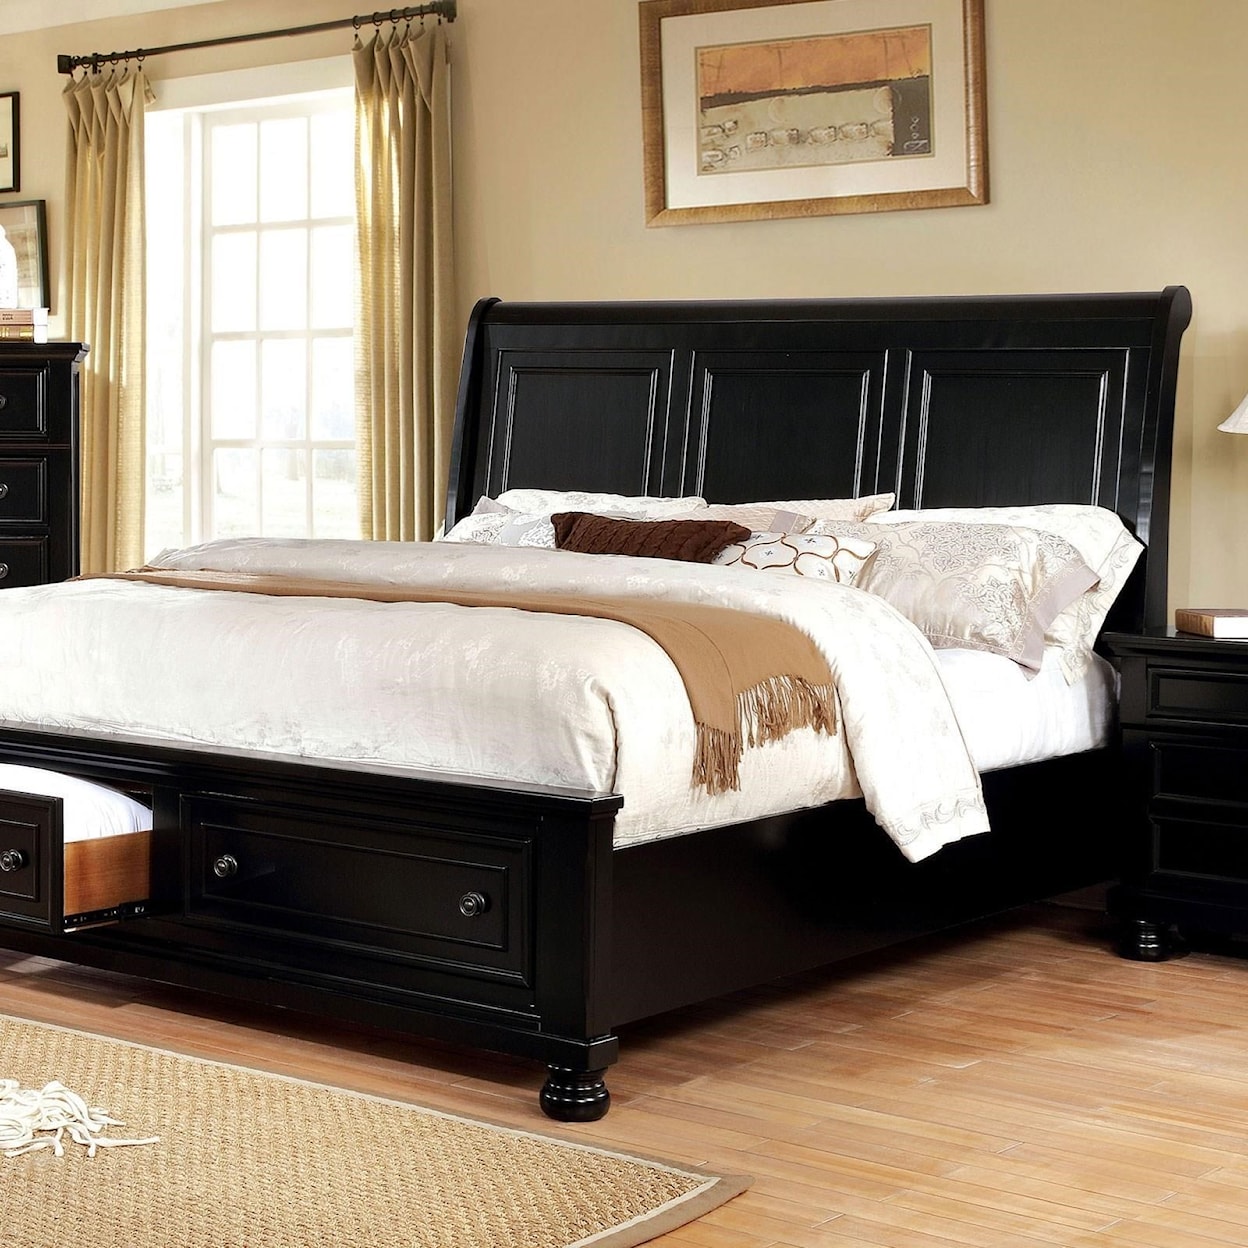 Furniture of America Castor King Bed